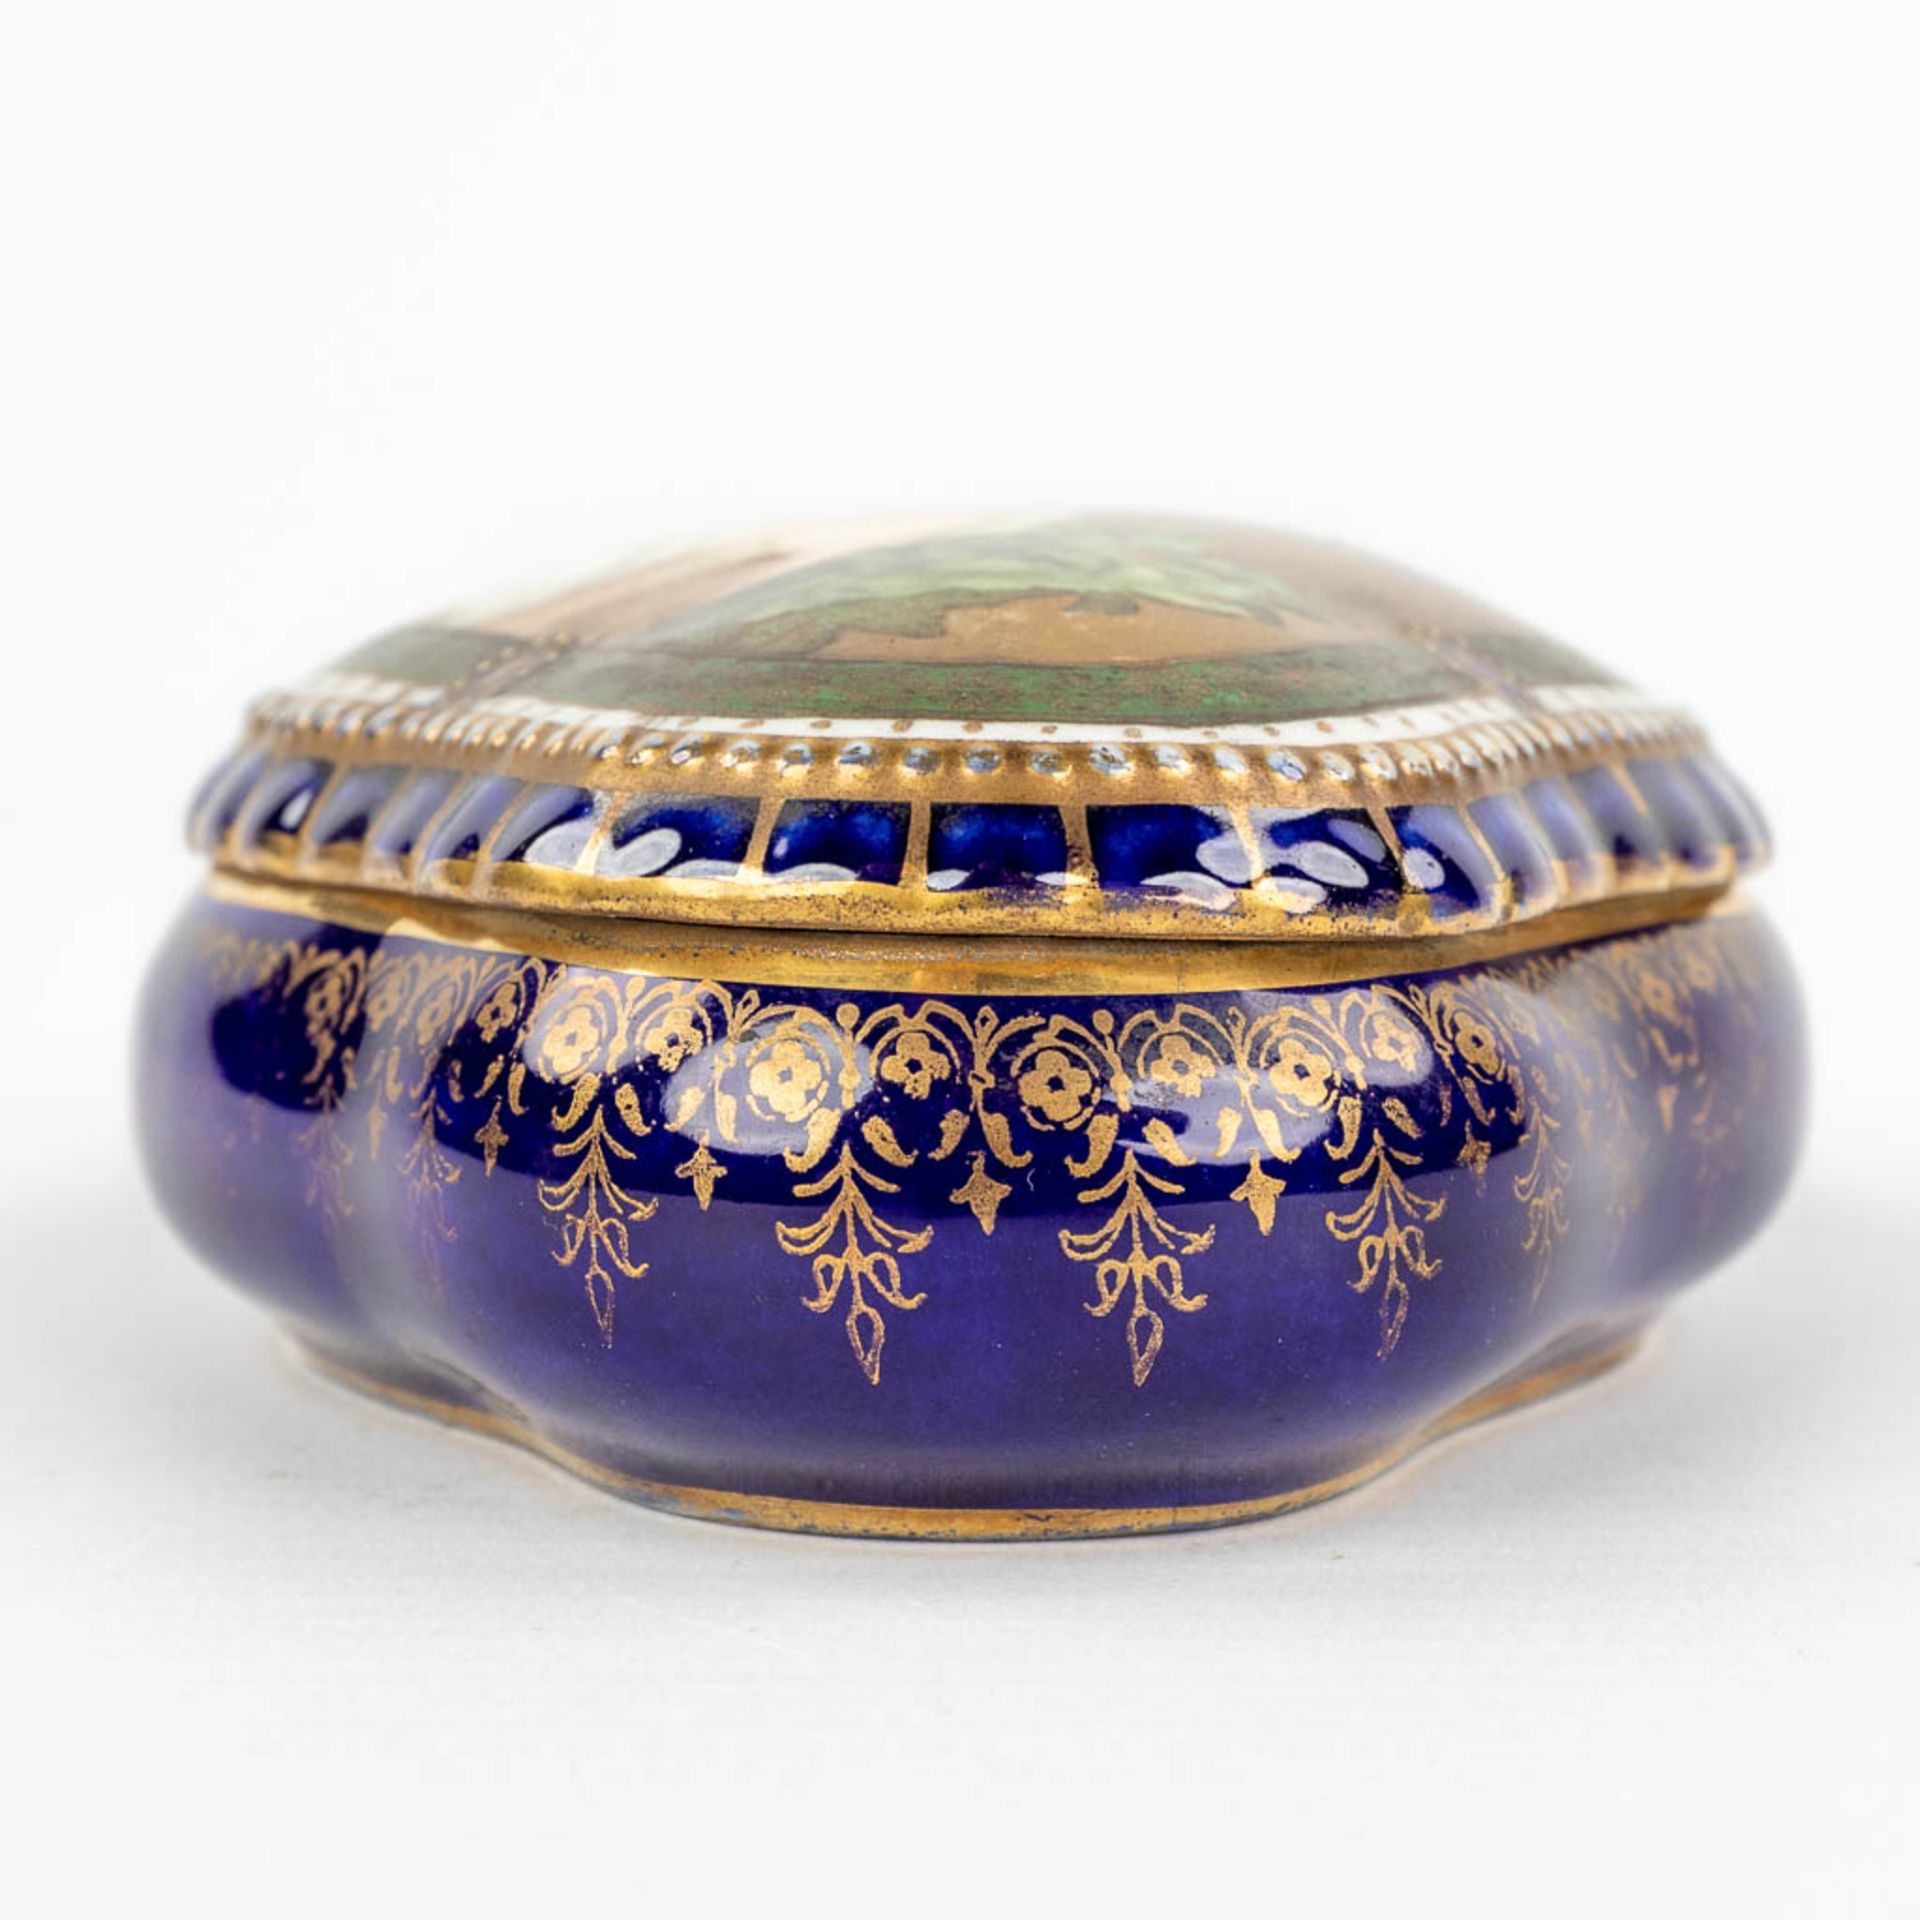 Sitzendorf & 'Royal Vienna' a set of 2 porcelain items. (L:12 x W:20 x H:23 cm) - Image 21 of 22